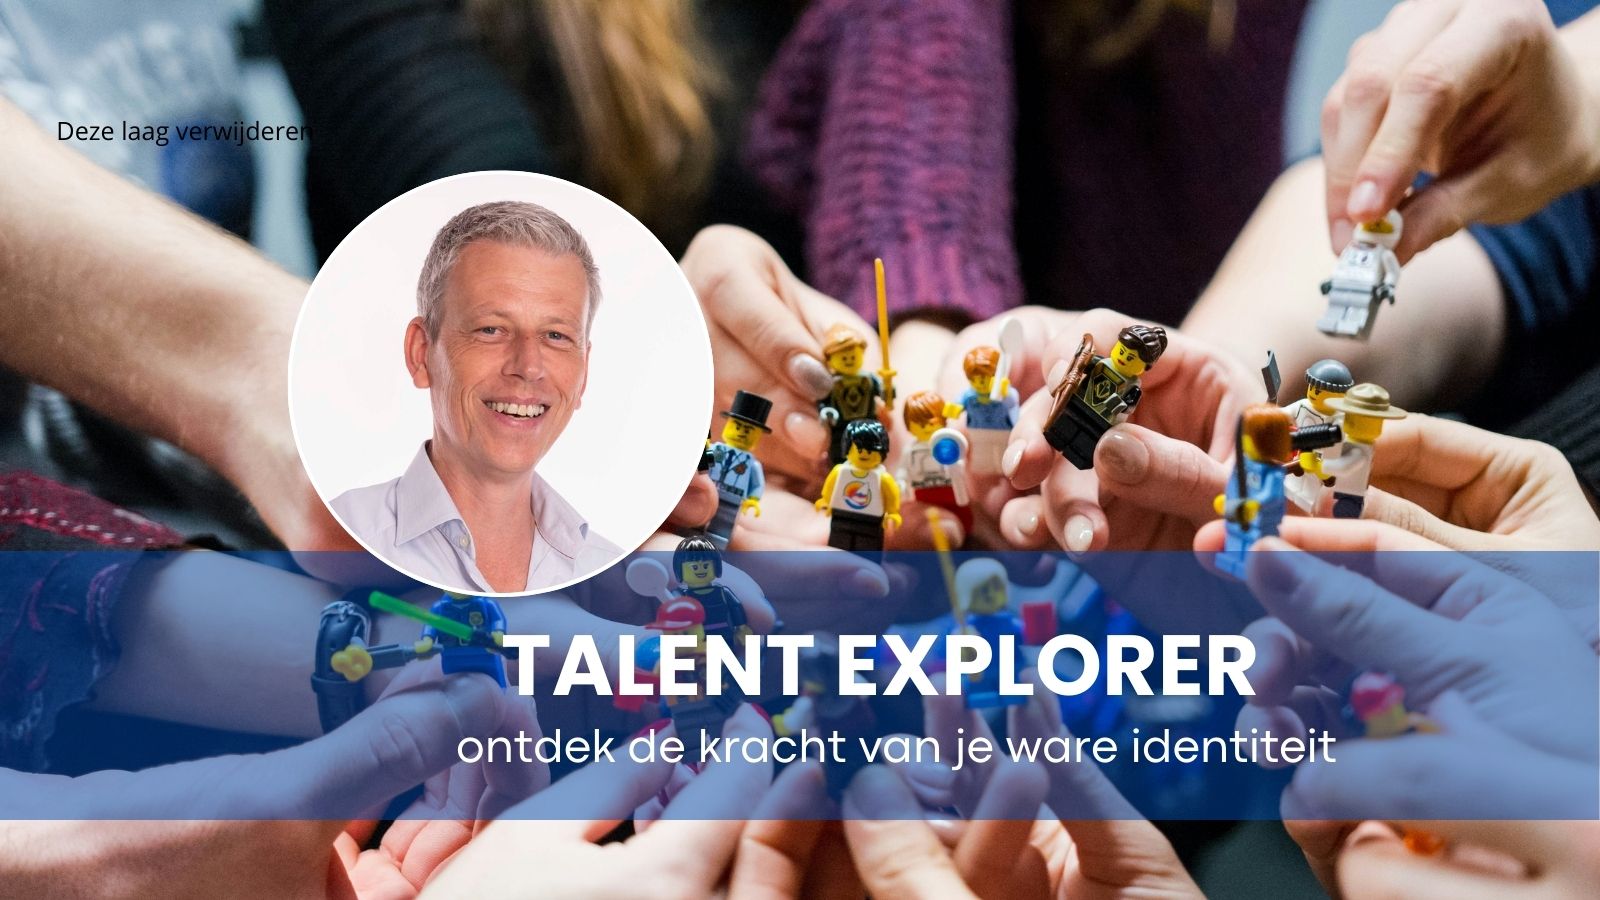 Bedrijfsuitje Middelburg: Talent explorer